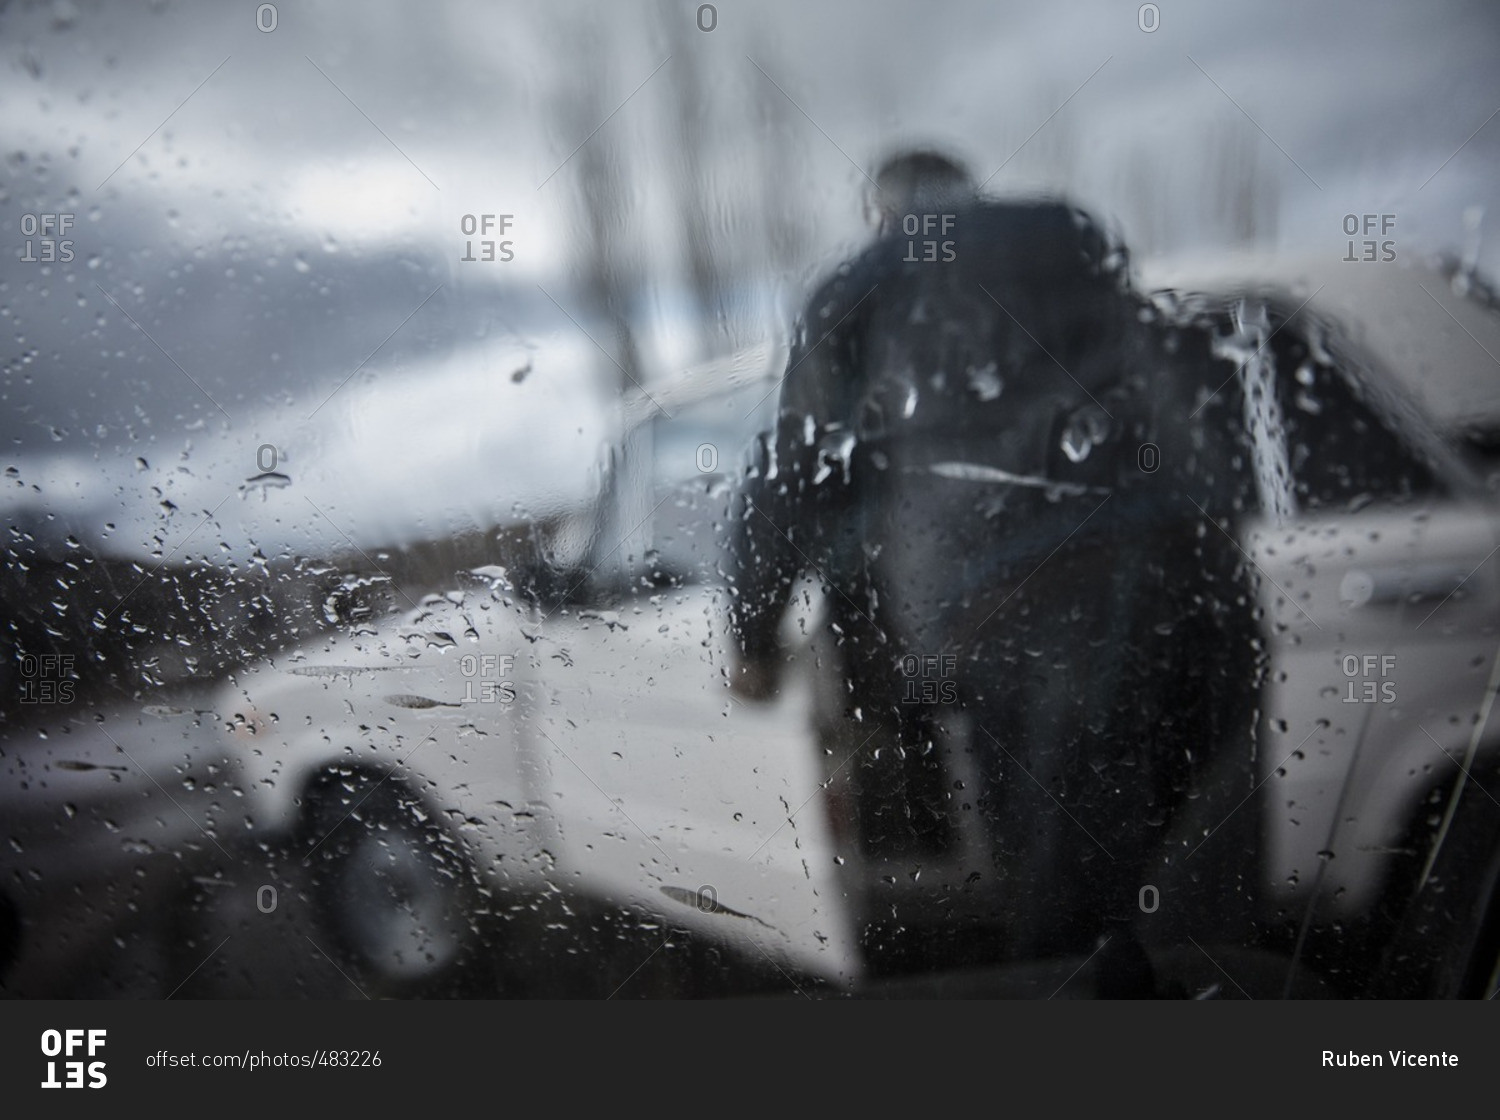 A man at Zovasar entering his car in the rain, Armenia